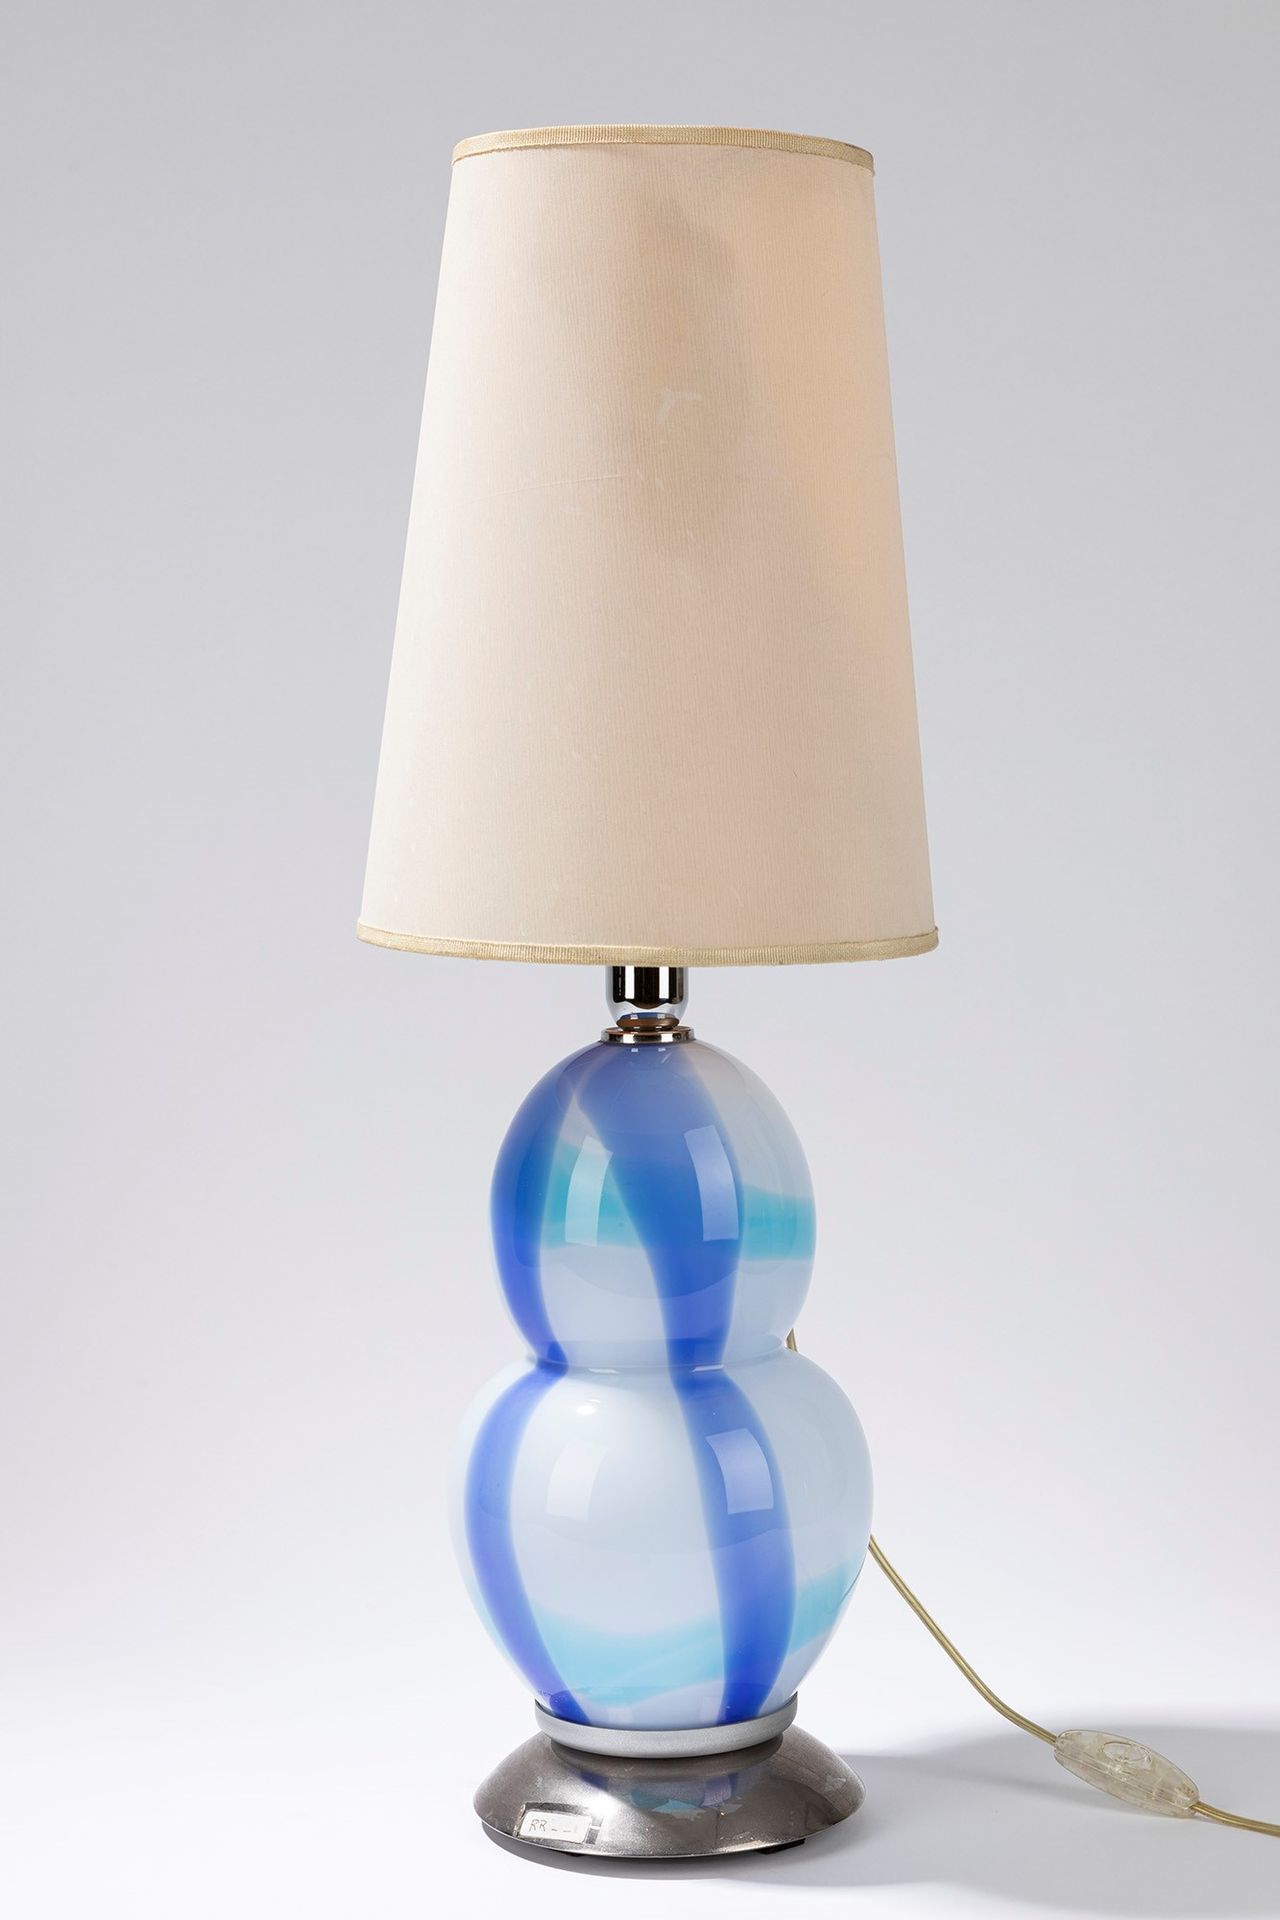 Ettore Sottsass Lampe de table, période 70's

cm h 64,5 x 20
verre polychrome.